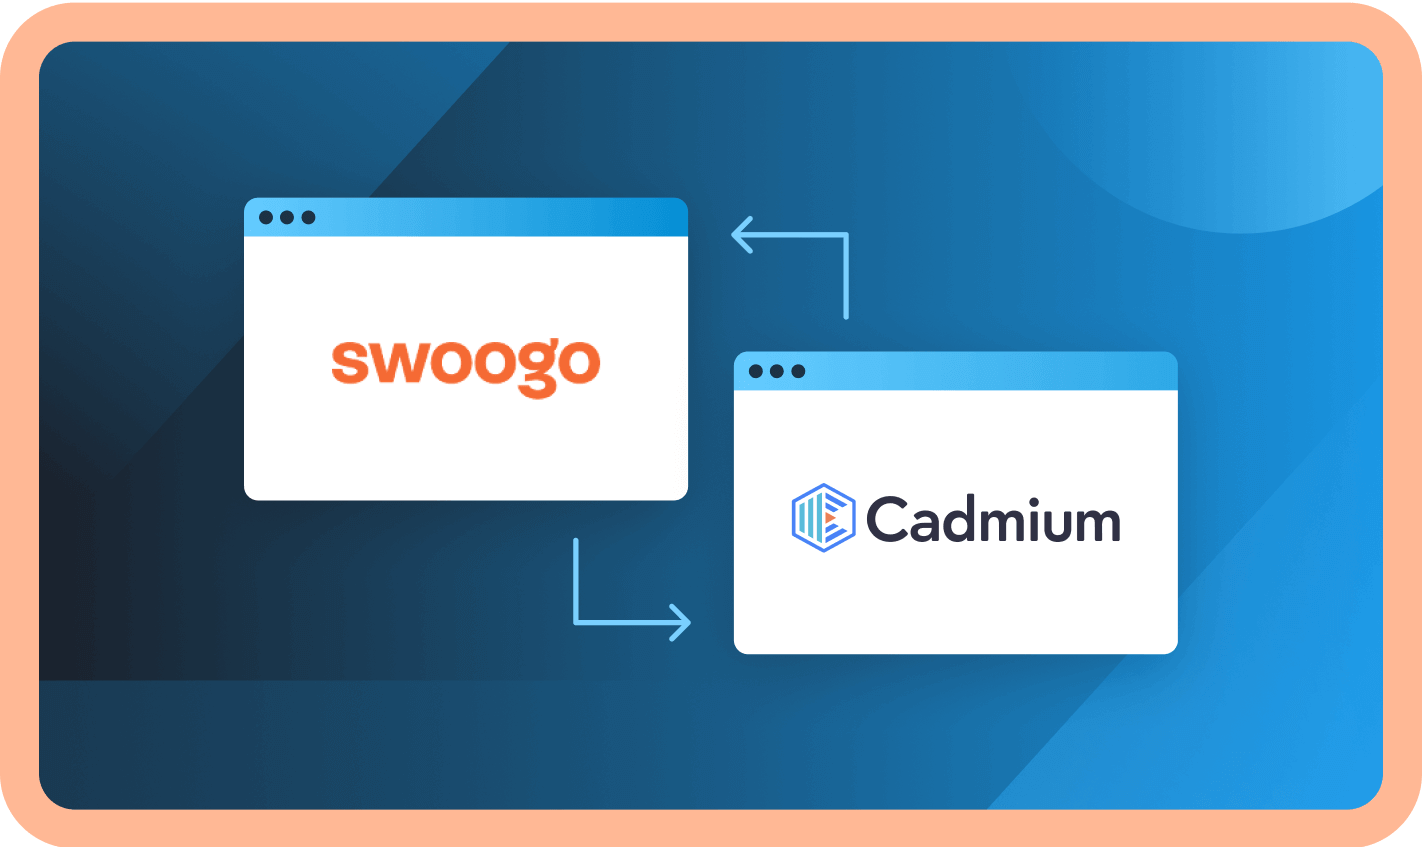 Cadmium-x-Swoogo-Session